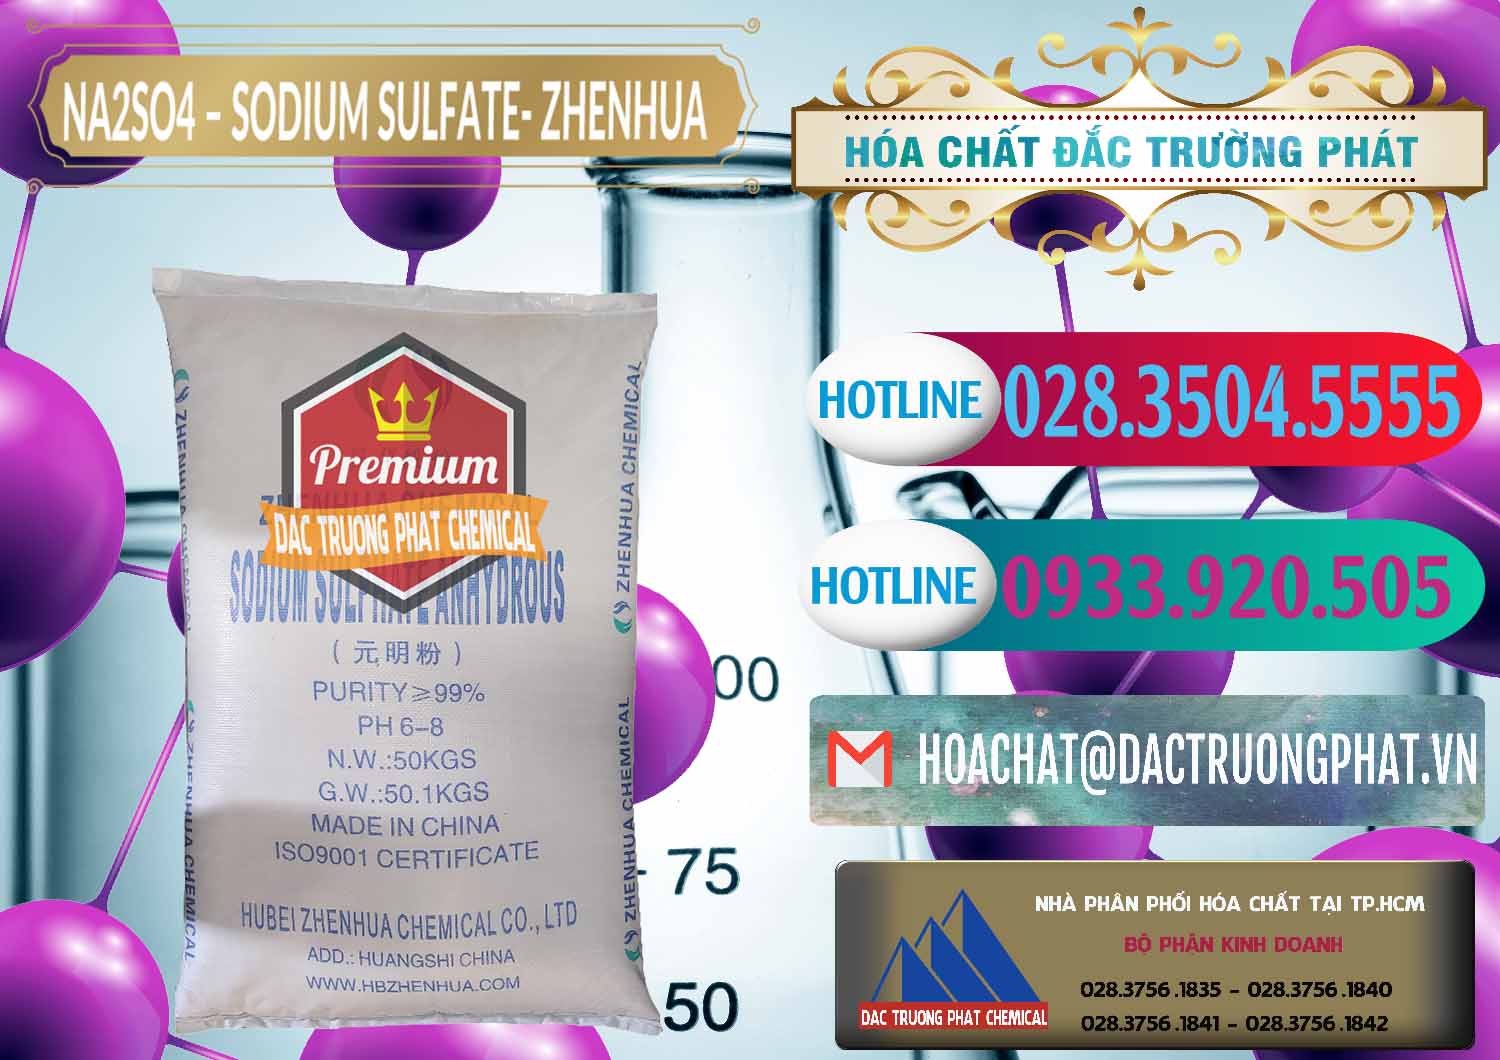 Đơn vị chuyên bán và phân phối Sodium Sulphate - Muối Sunfat Na2SO4 Zhenhua Trung Quốc China - 0101 - Đơn vị chuyên phân phối & cung ứng hóa chất tại TP.HCM - truongphat.vn